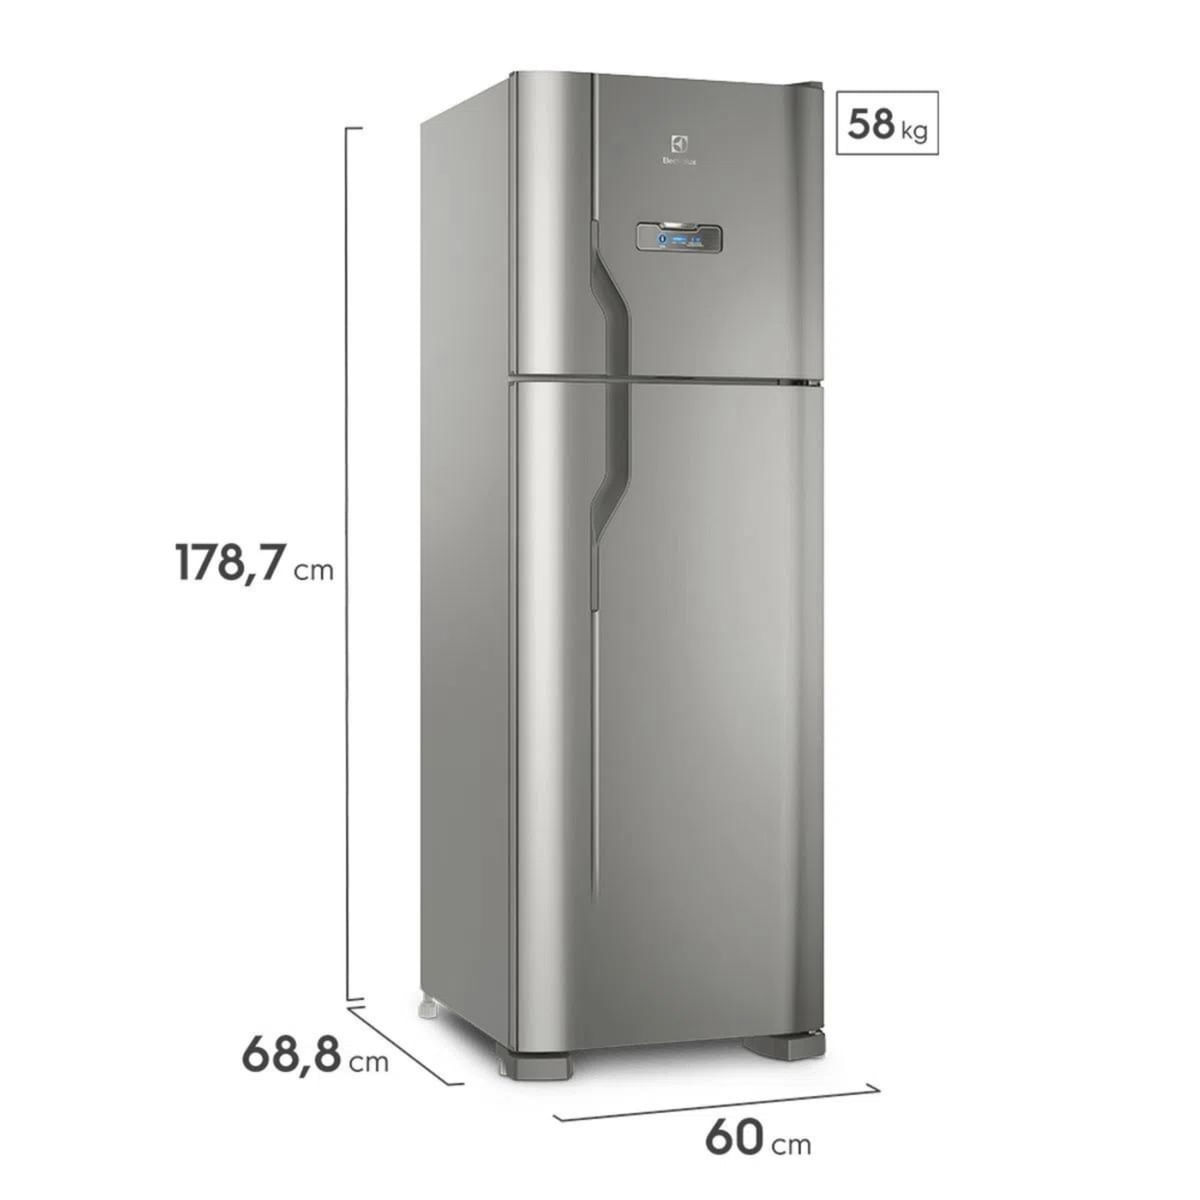 geladeira-electrolux-degelo-automatico-duplex-2-portas-dfx41-371-litros-inox-220v-6.jpg